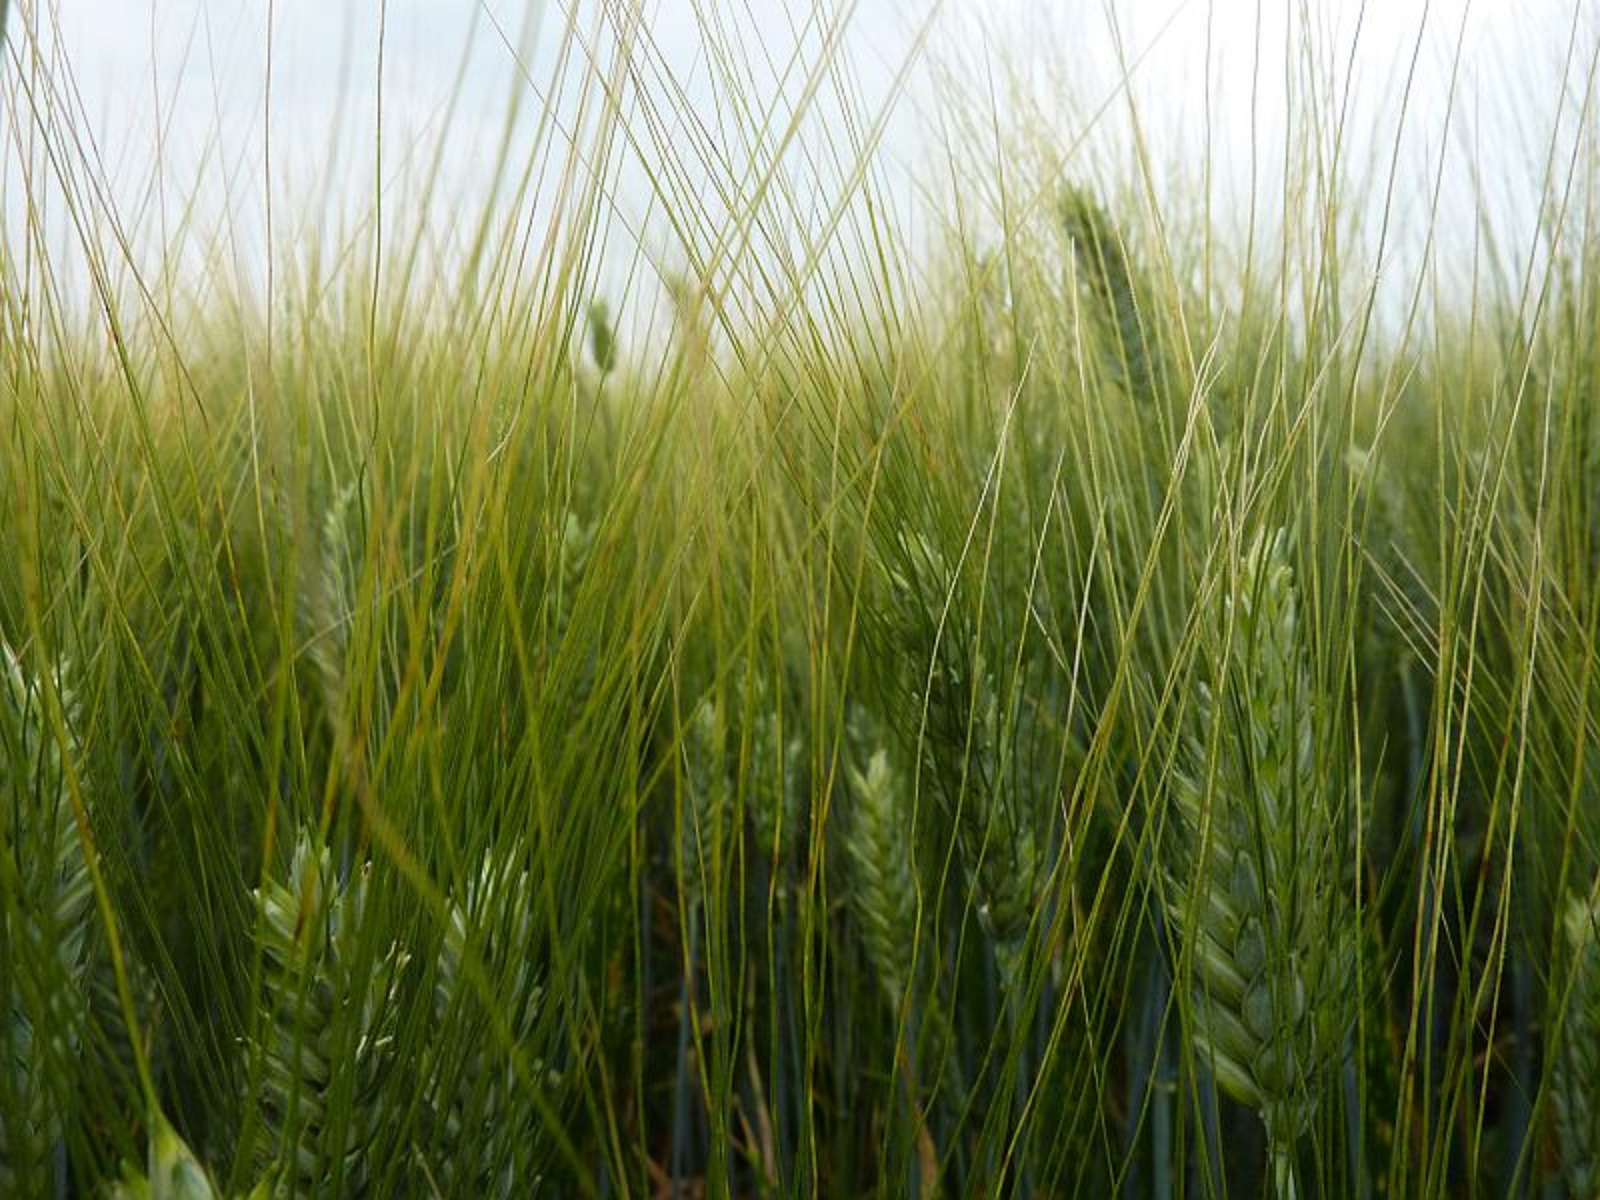 Le blé dur bio, un atout pour la rentabilité des céréales en